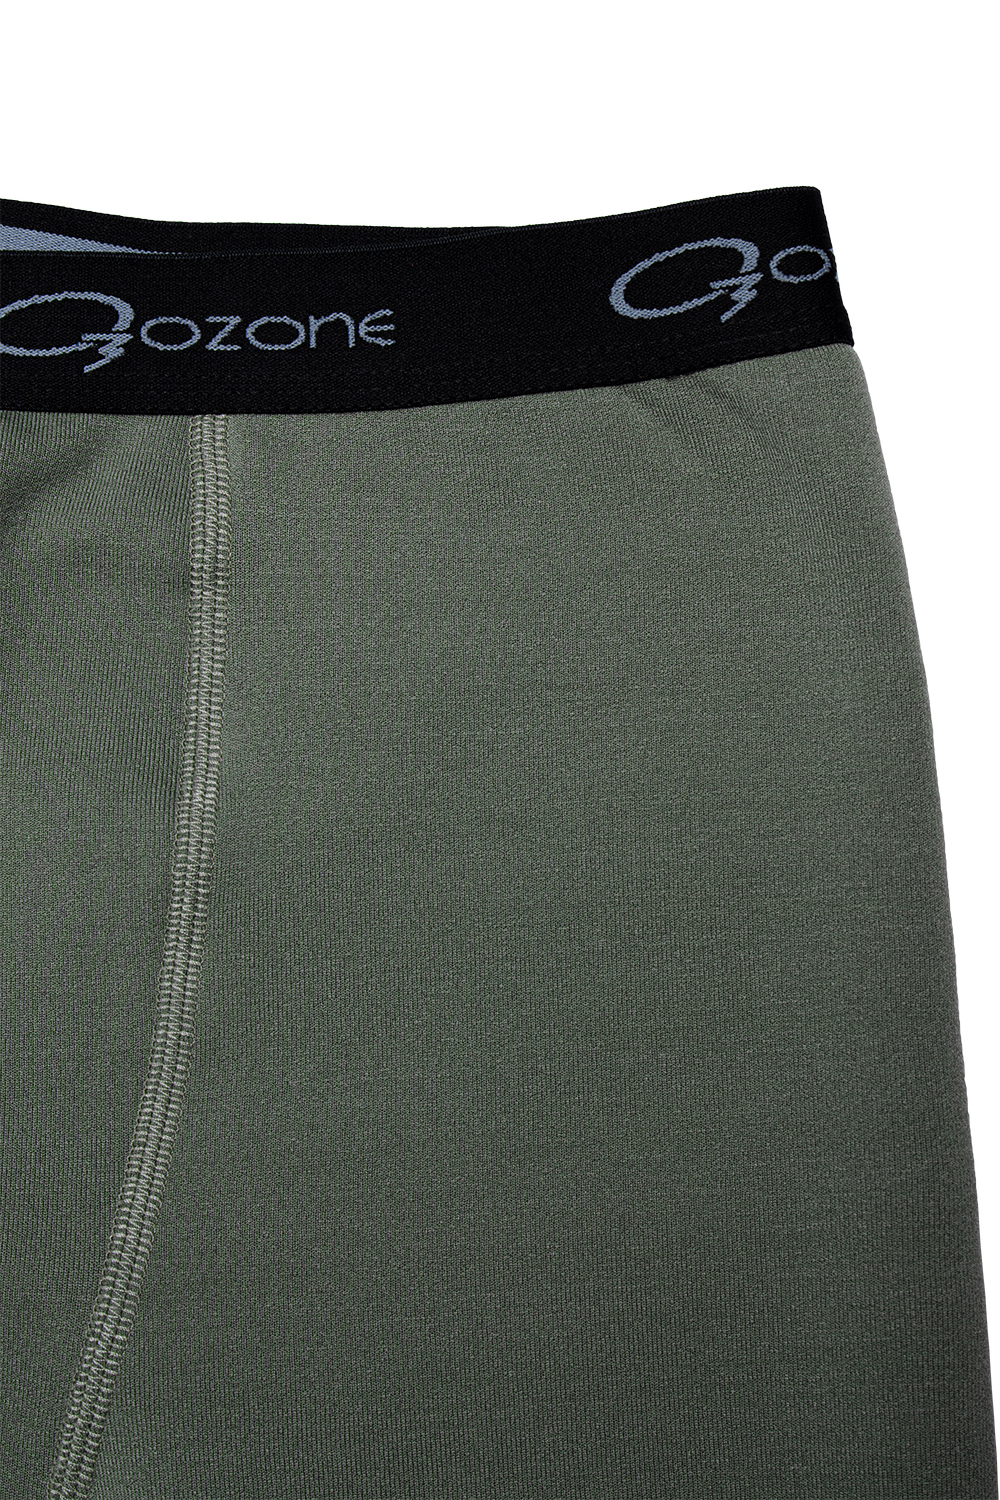 Теплый мужской комплект термобелья Dark купить в интернет-магазине O3 Ozone